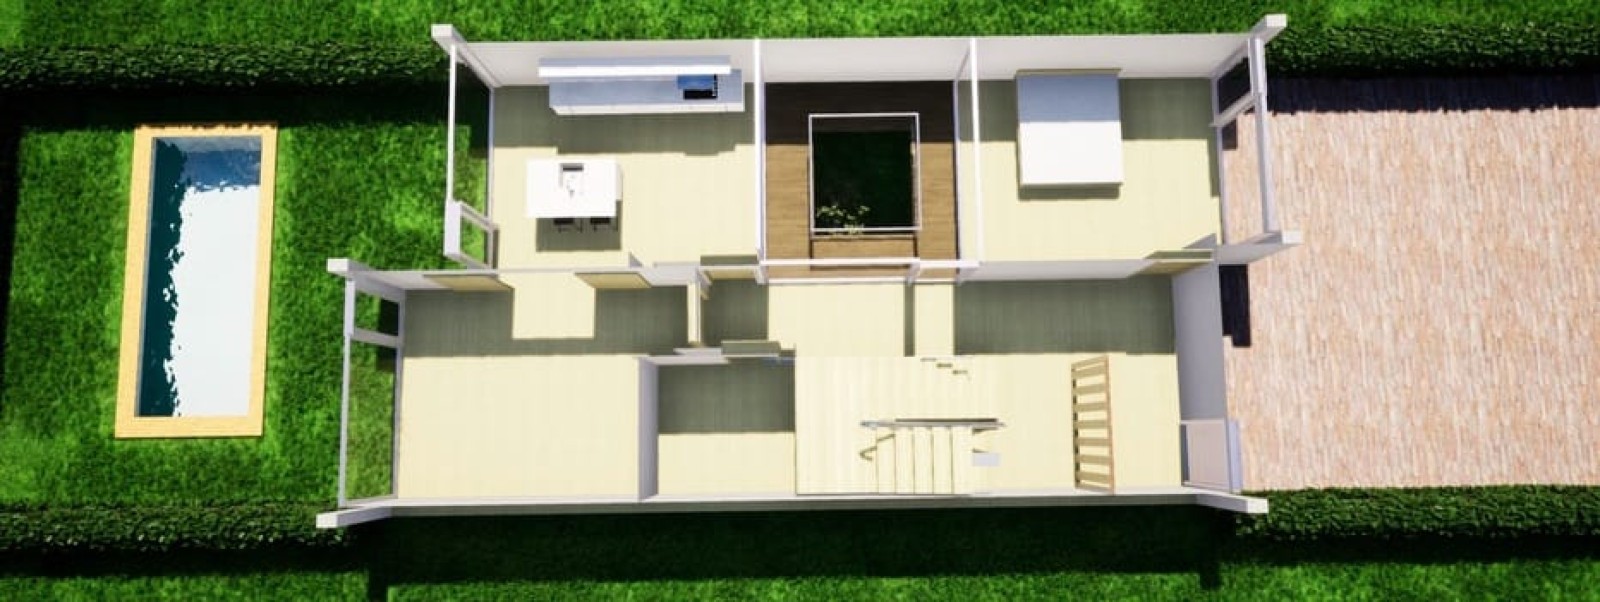 Villa de 4 dormitorios, nueva construcción, en venta en Tavira, Algarve_229498